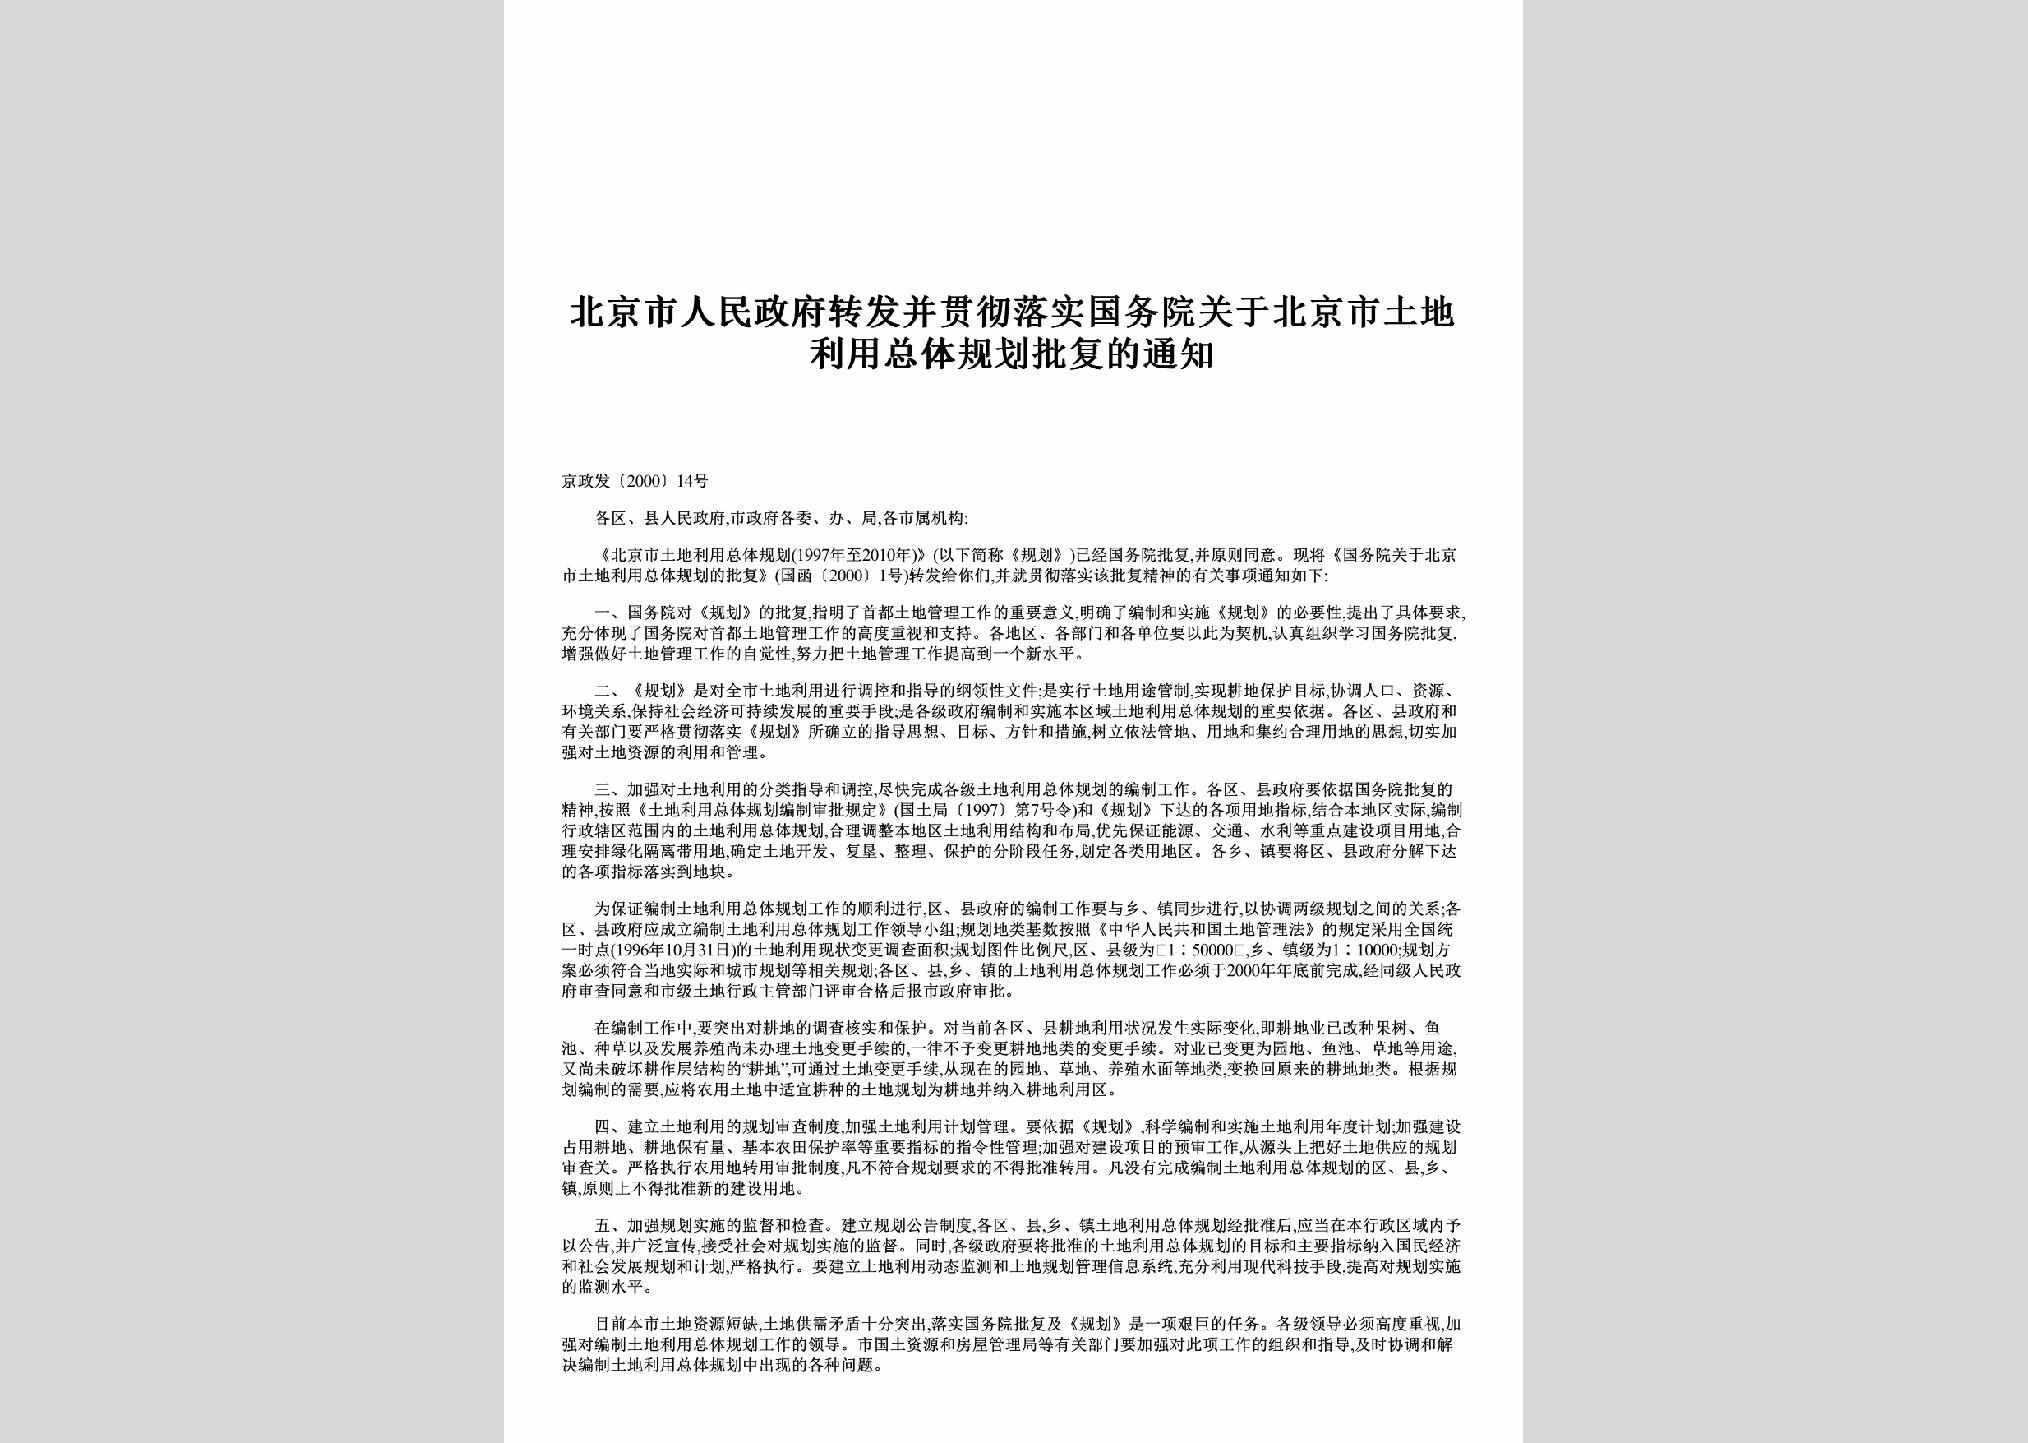 京政发[2000]14号：转发并贯彻落实国务院关于北京市土地利用总体规划批复的通知